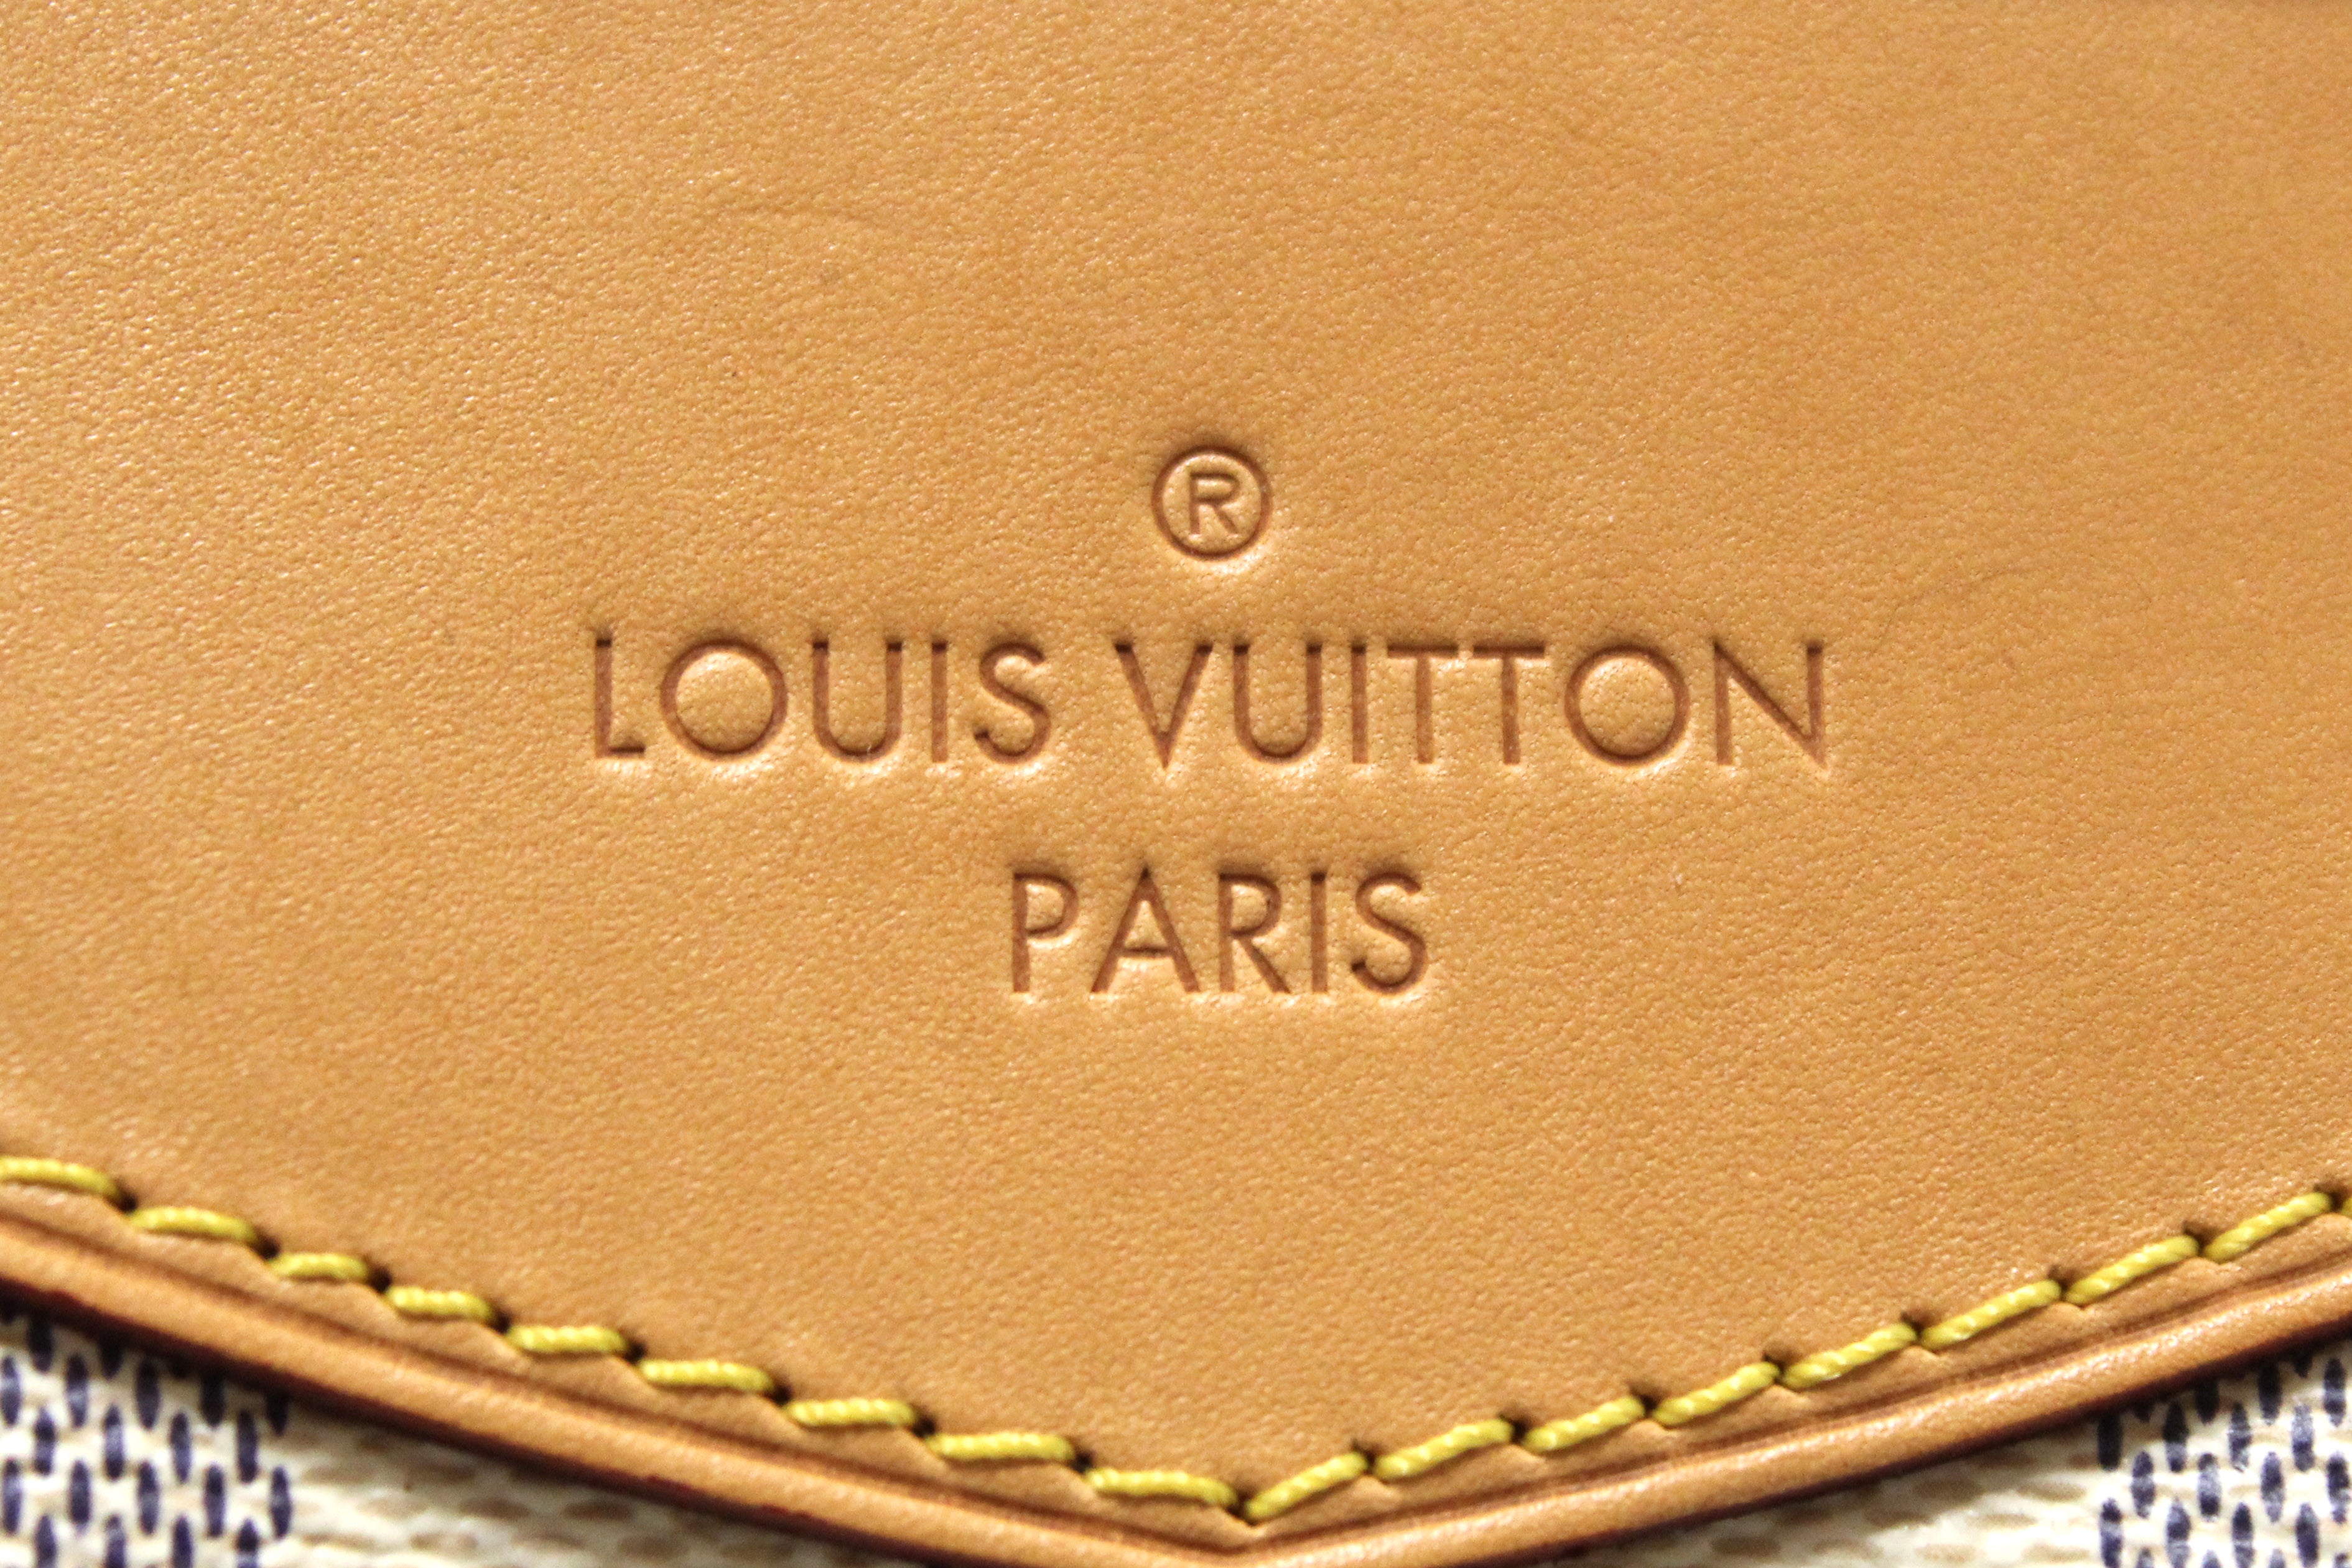 Authentic Louis Vuitton Damier Azur Canvas Siracusa PM Messenger Bag